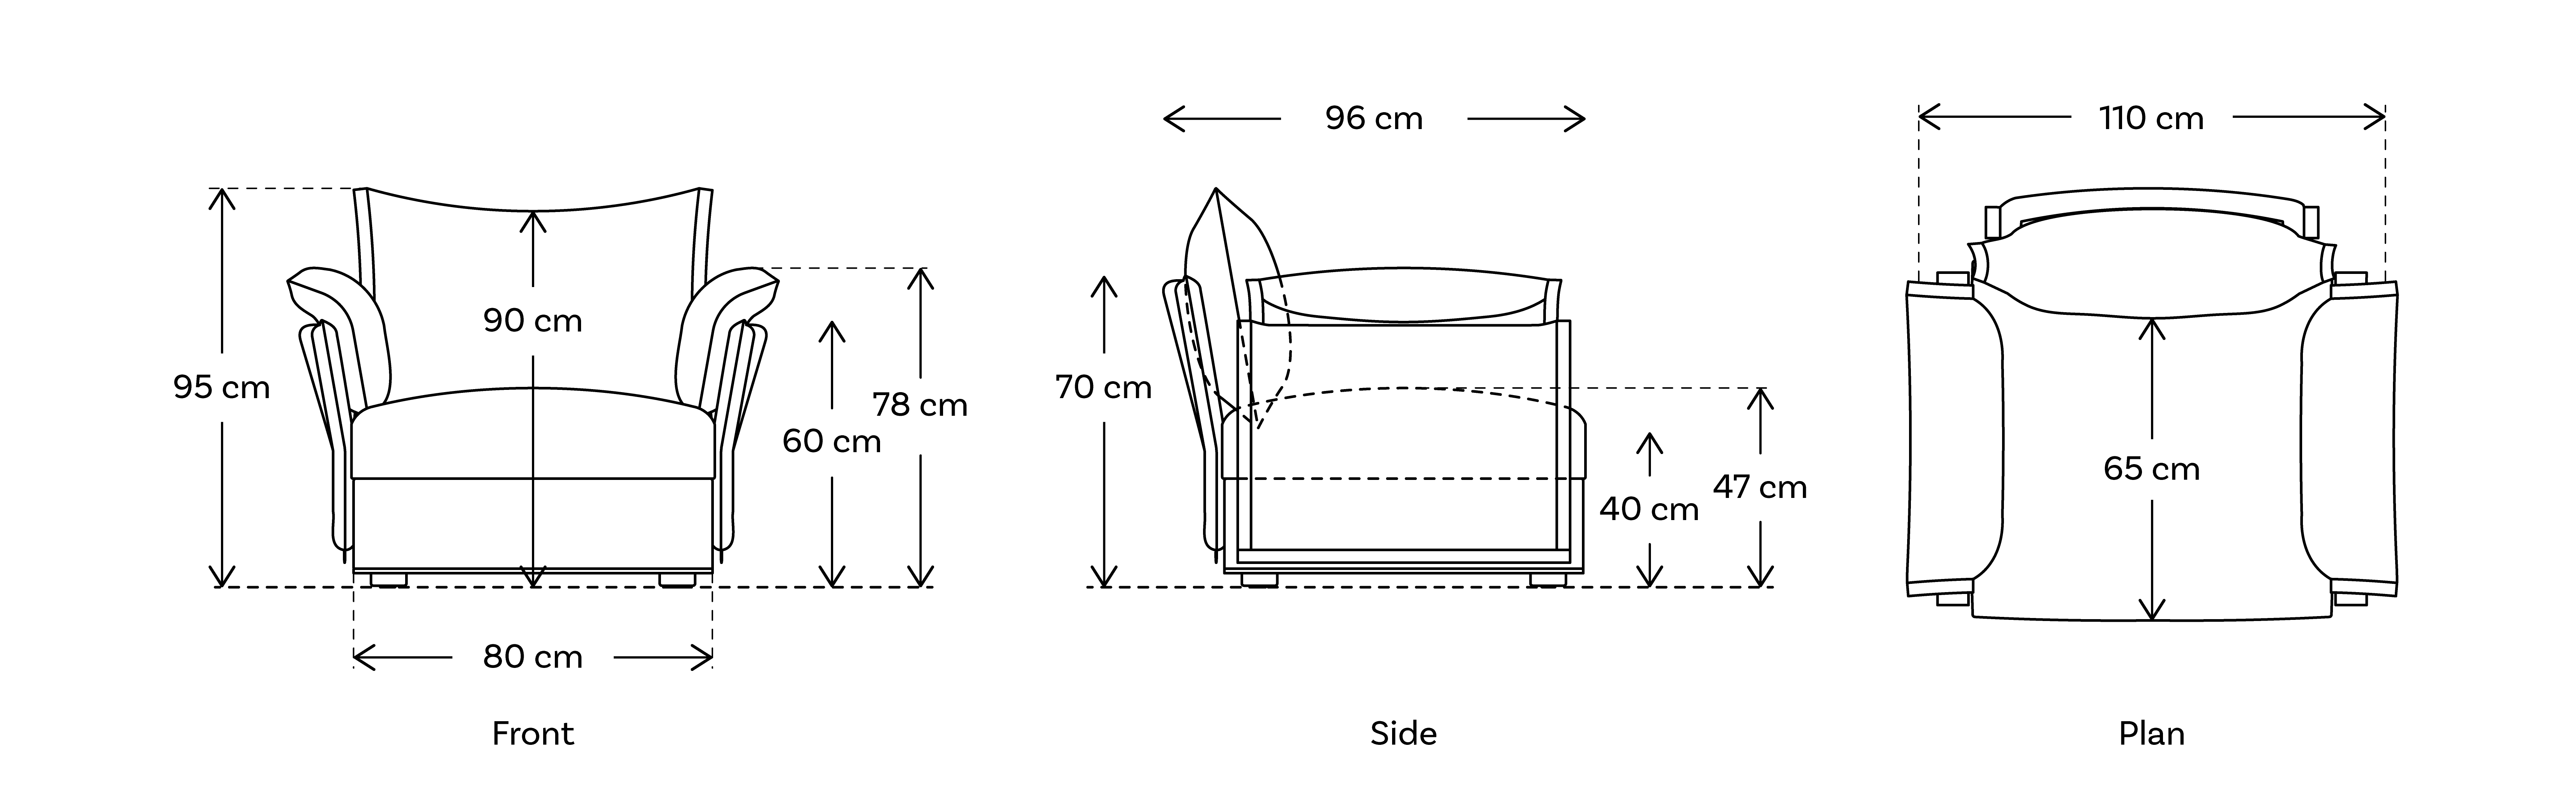 armchair modular sofa module dimensions